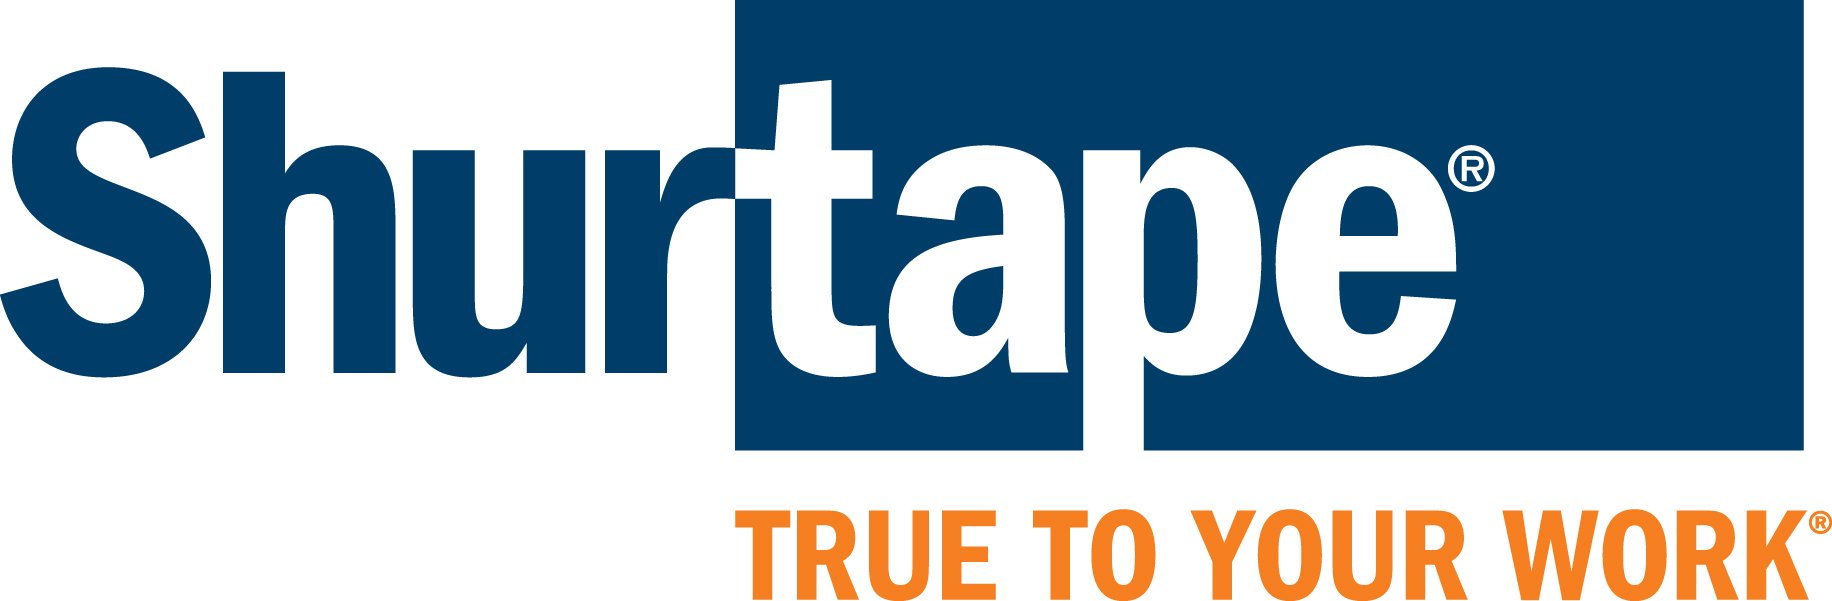 shurtape(r) logo blk